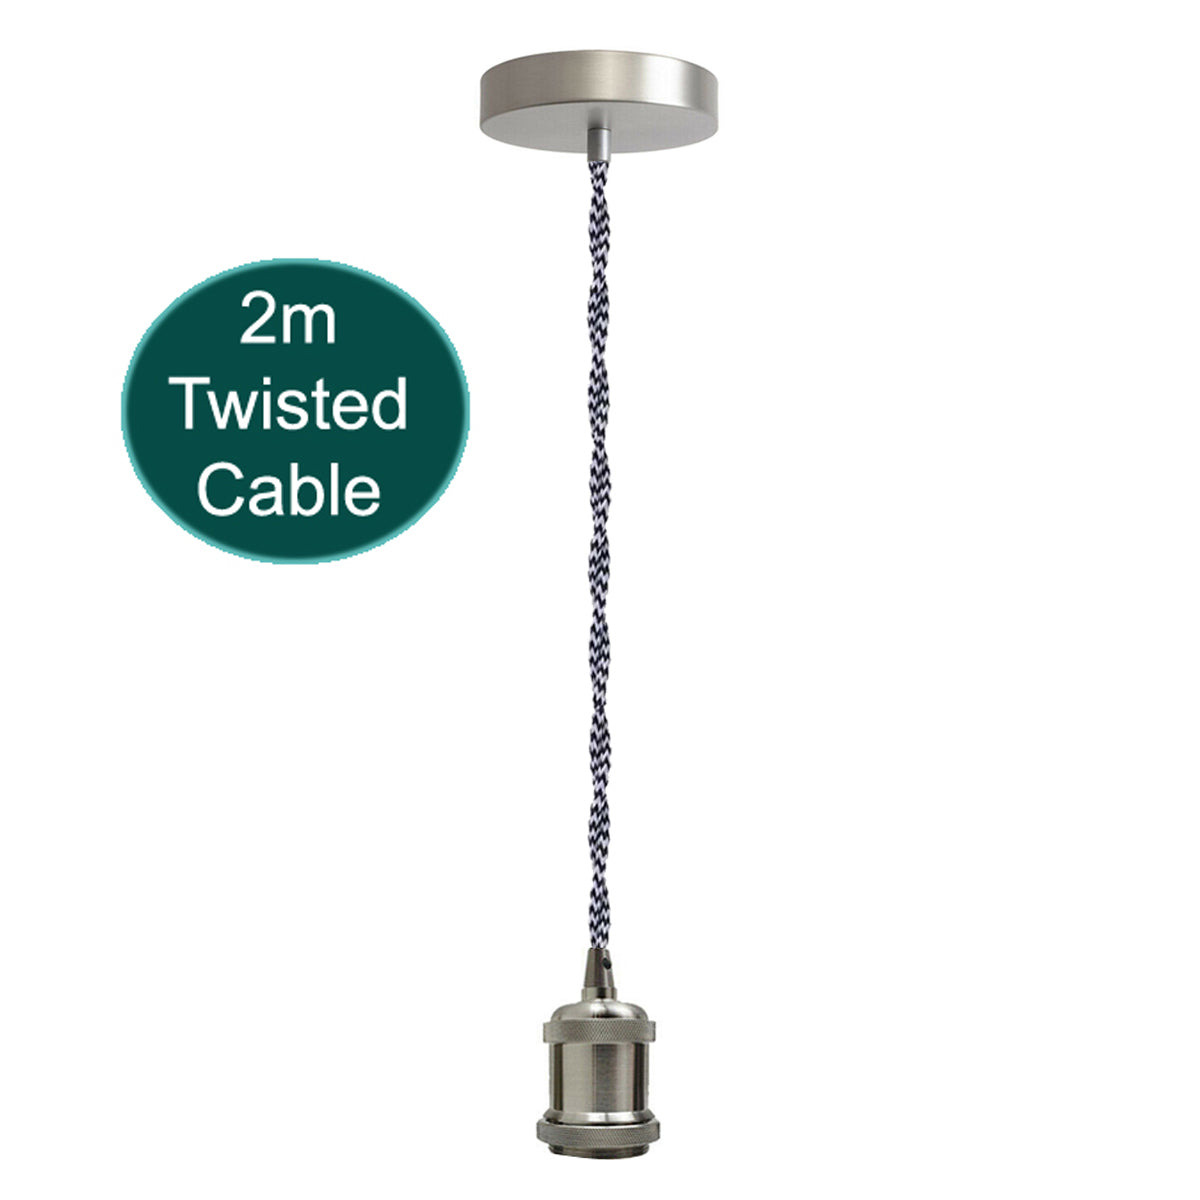 2m Black & White Twisted Cable E27 Base Satin Nickel Pendant Holder~1733 - LEDSone UK Ltd